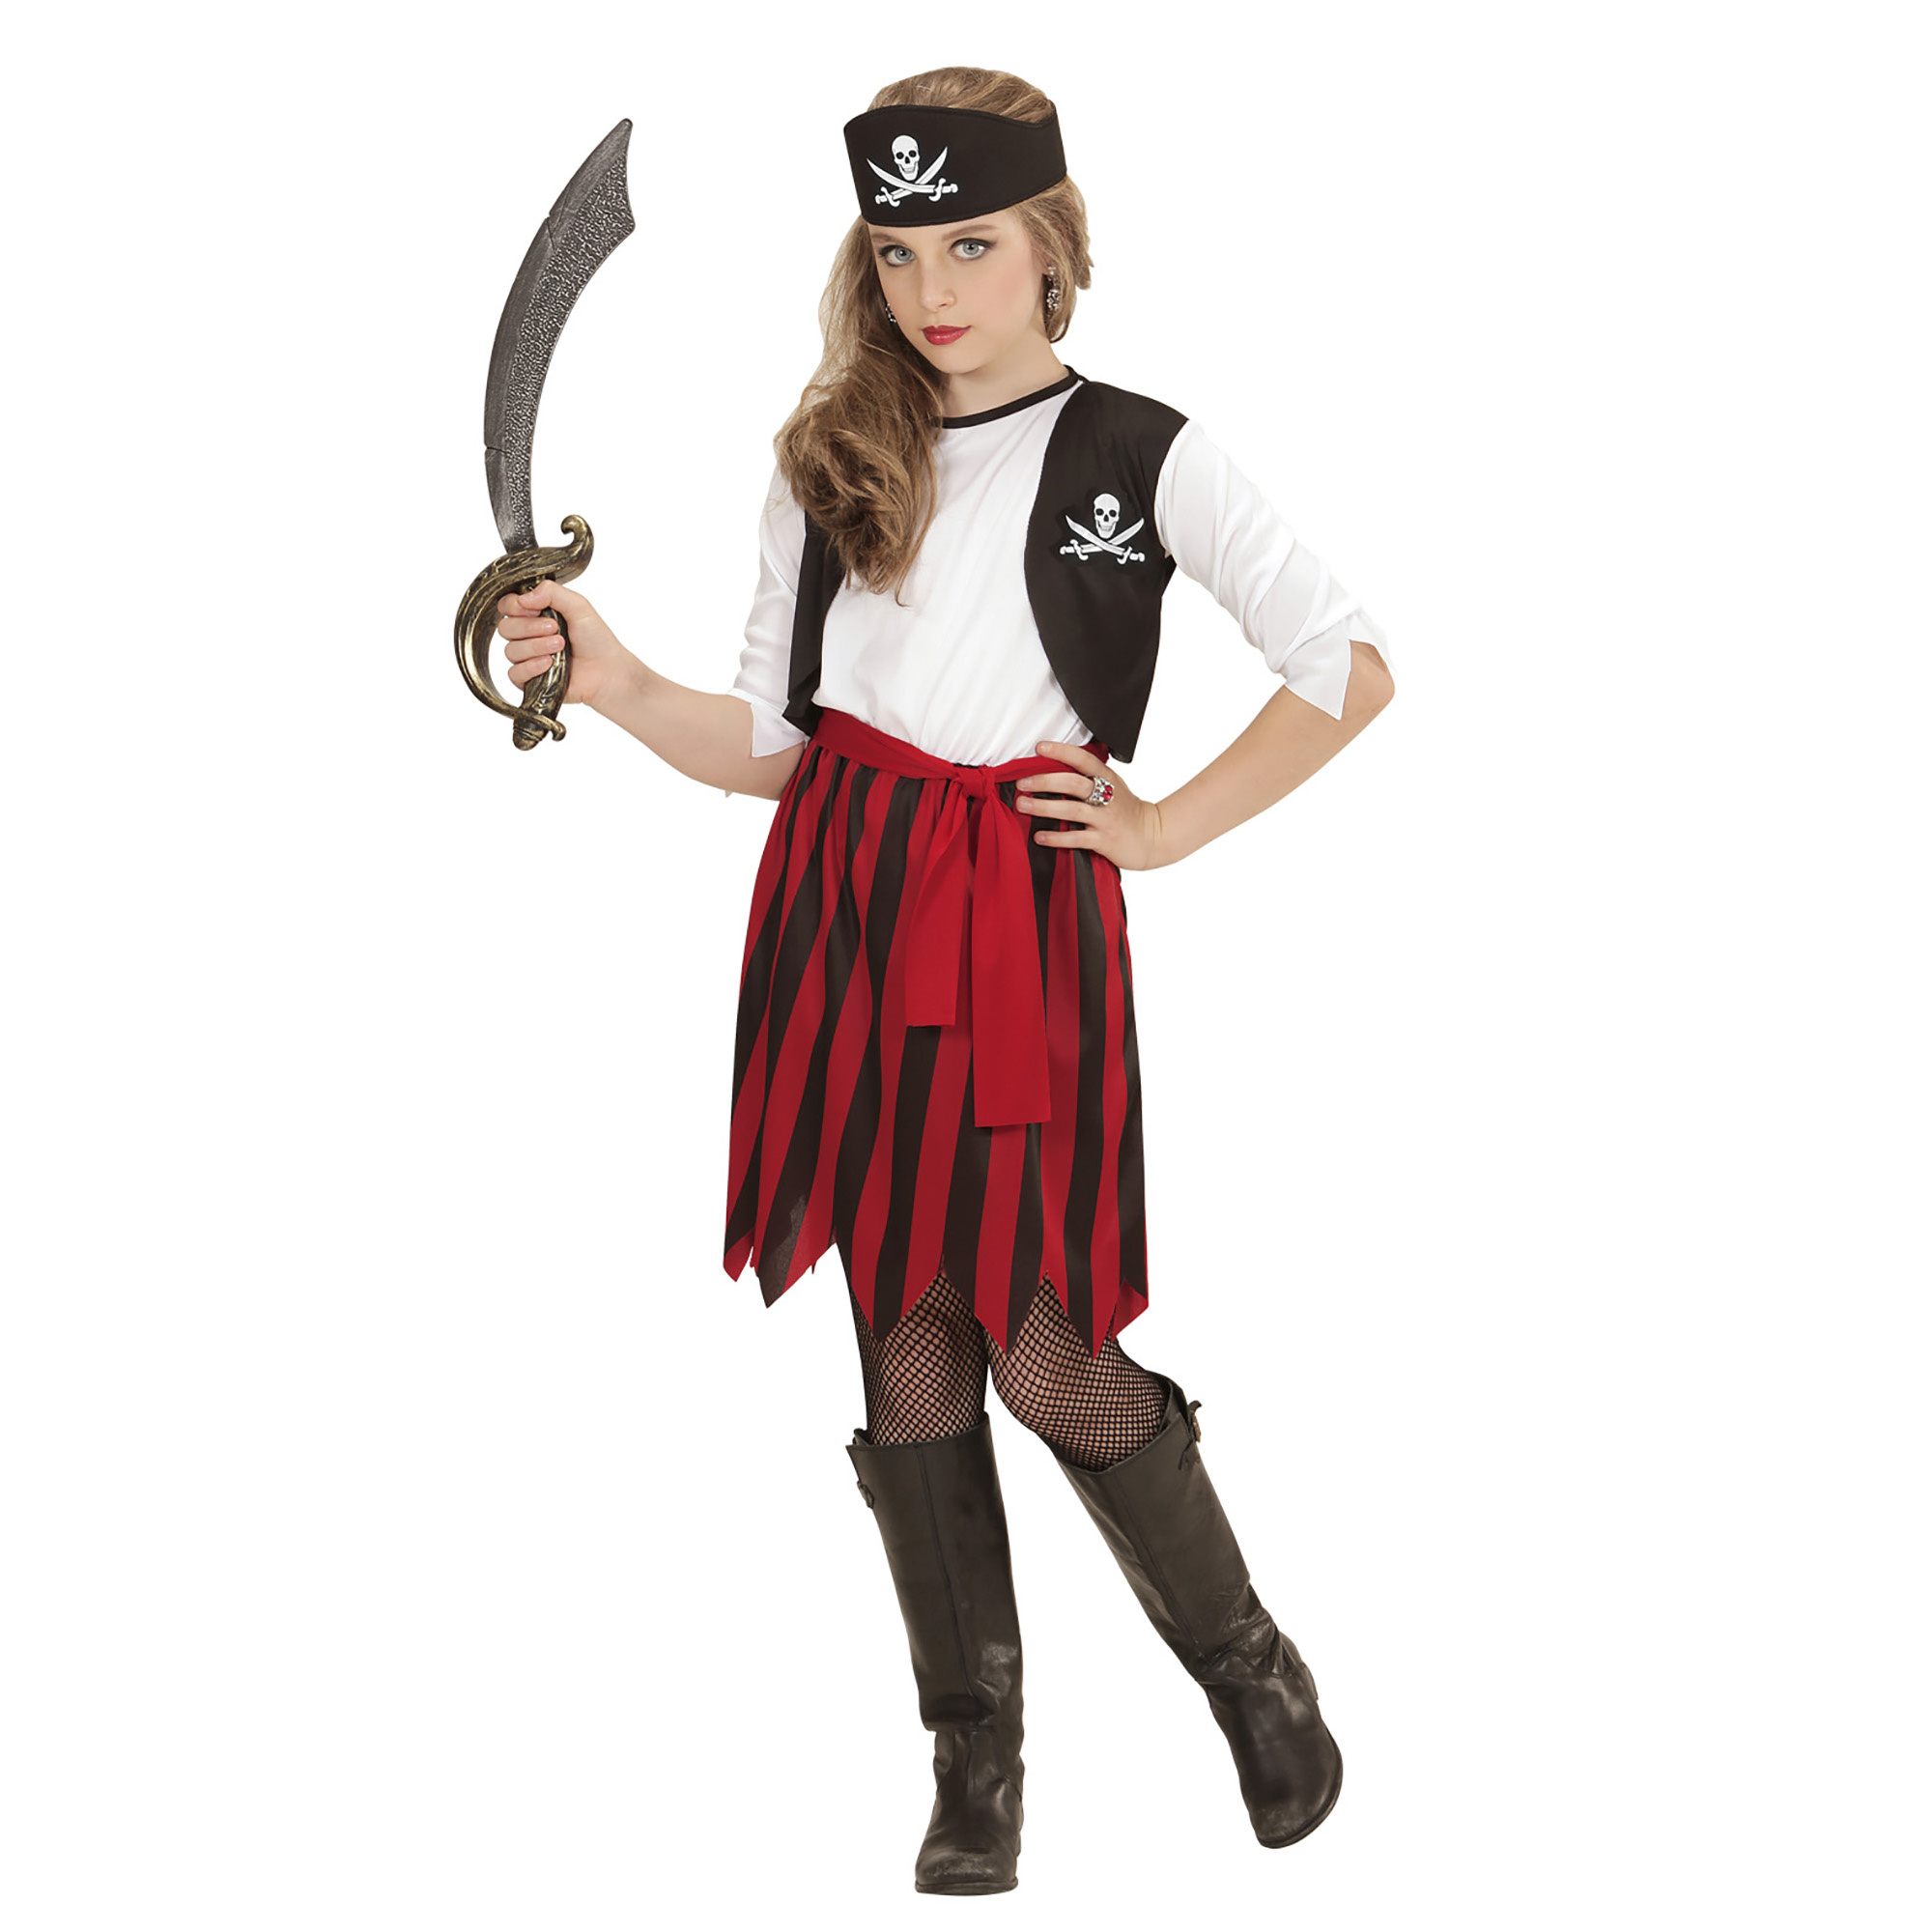 Widmann - Piraat & Viking Kostuum - Piratenmeisje Pemm Kostuum - rood - Maat 140 - Carnavalskleding - Verkleedkleding